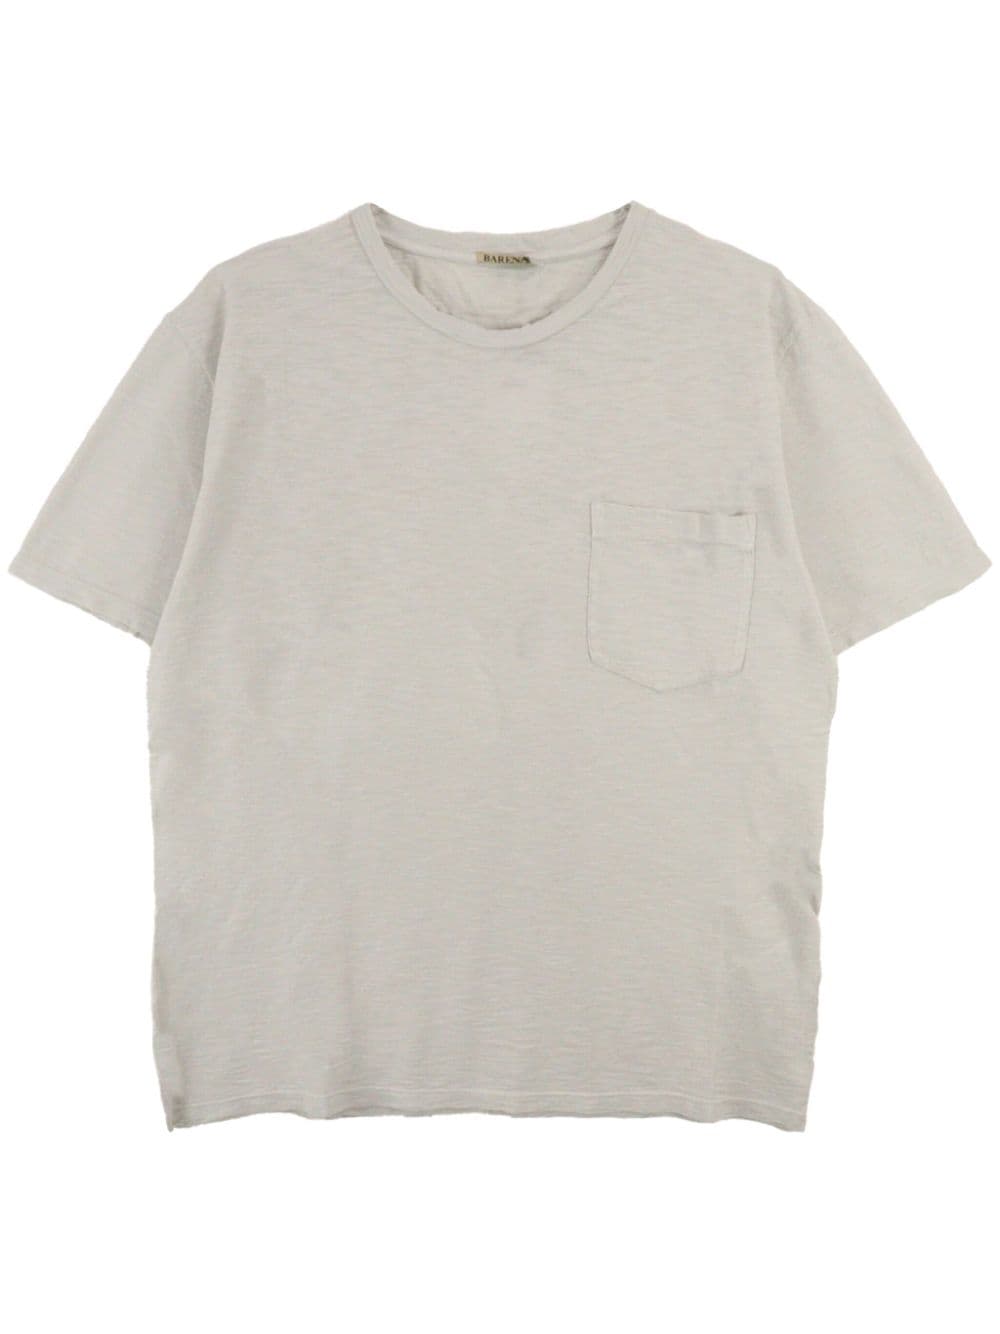 chest-pocket cotton t-shirt